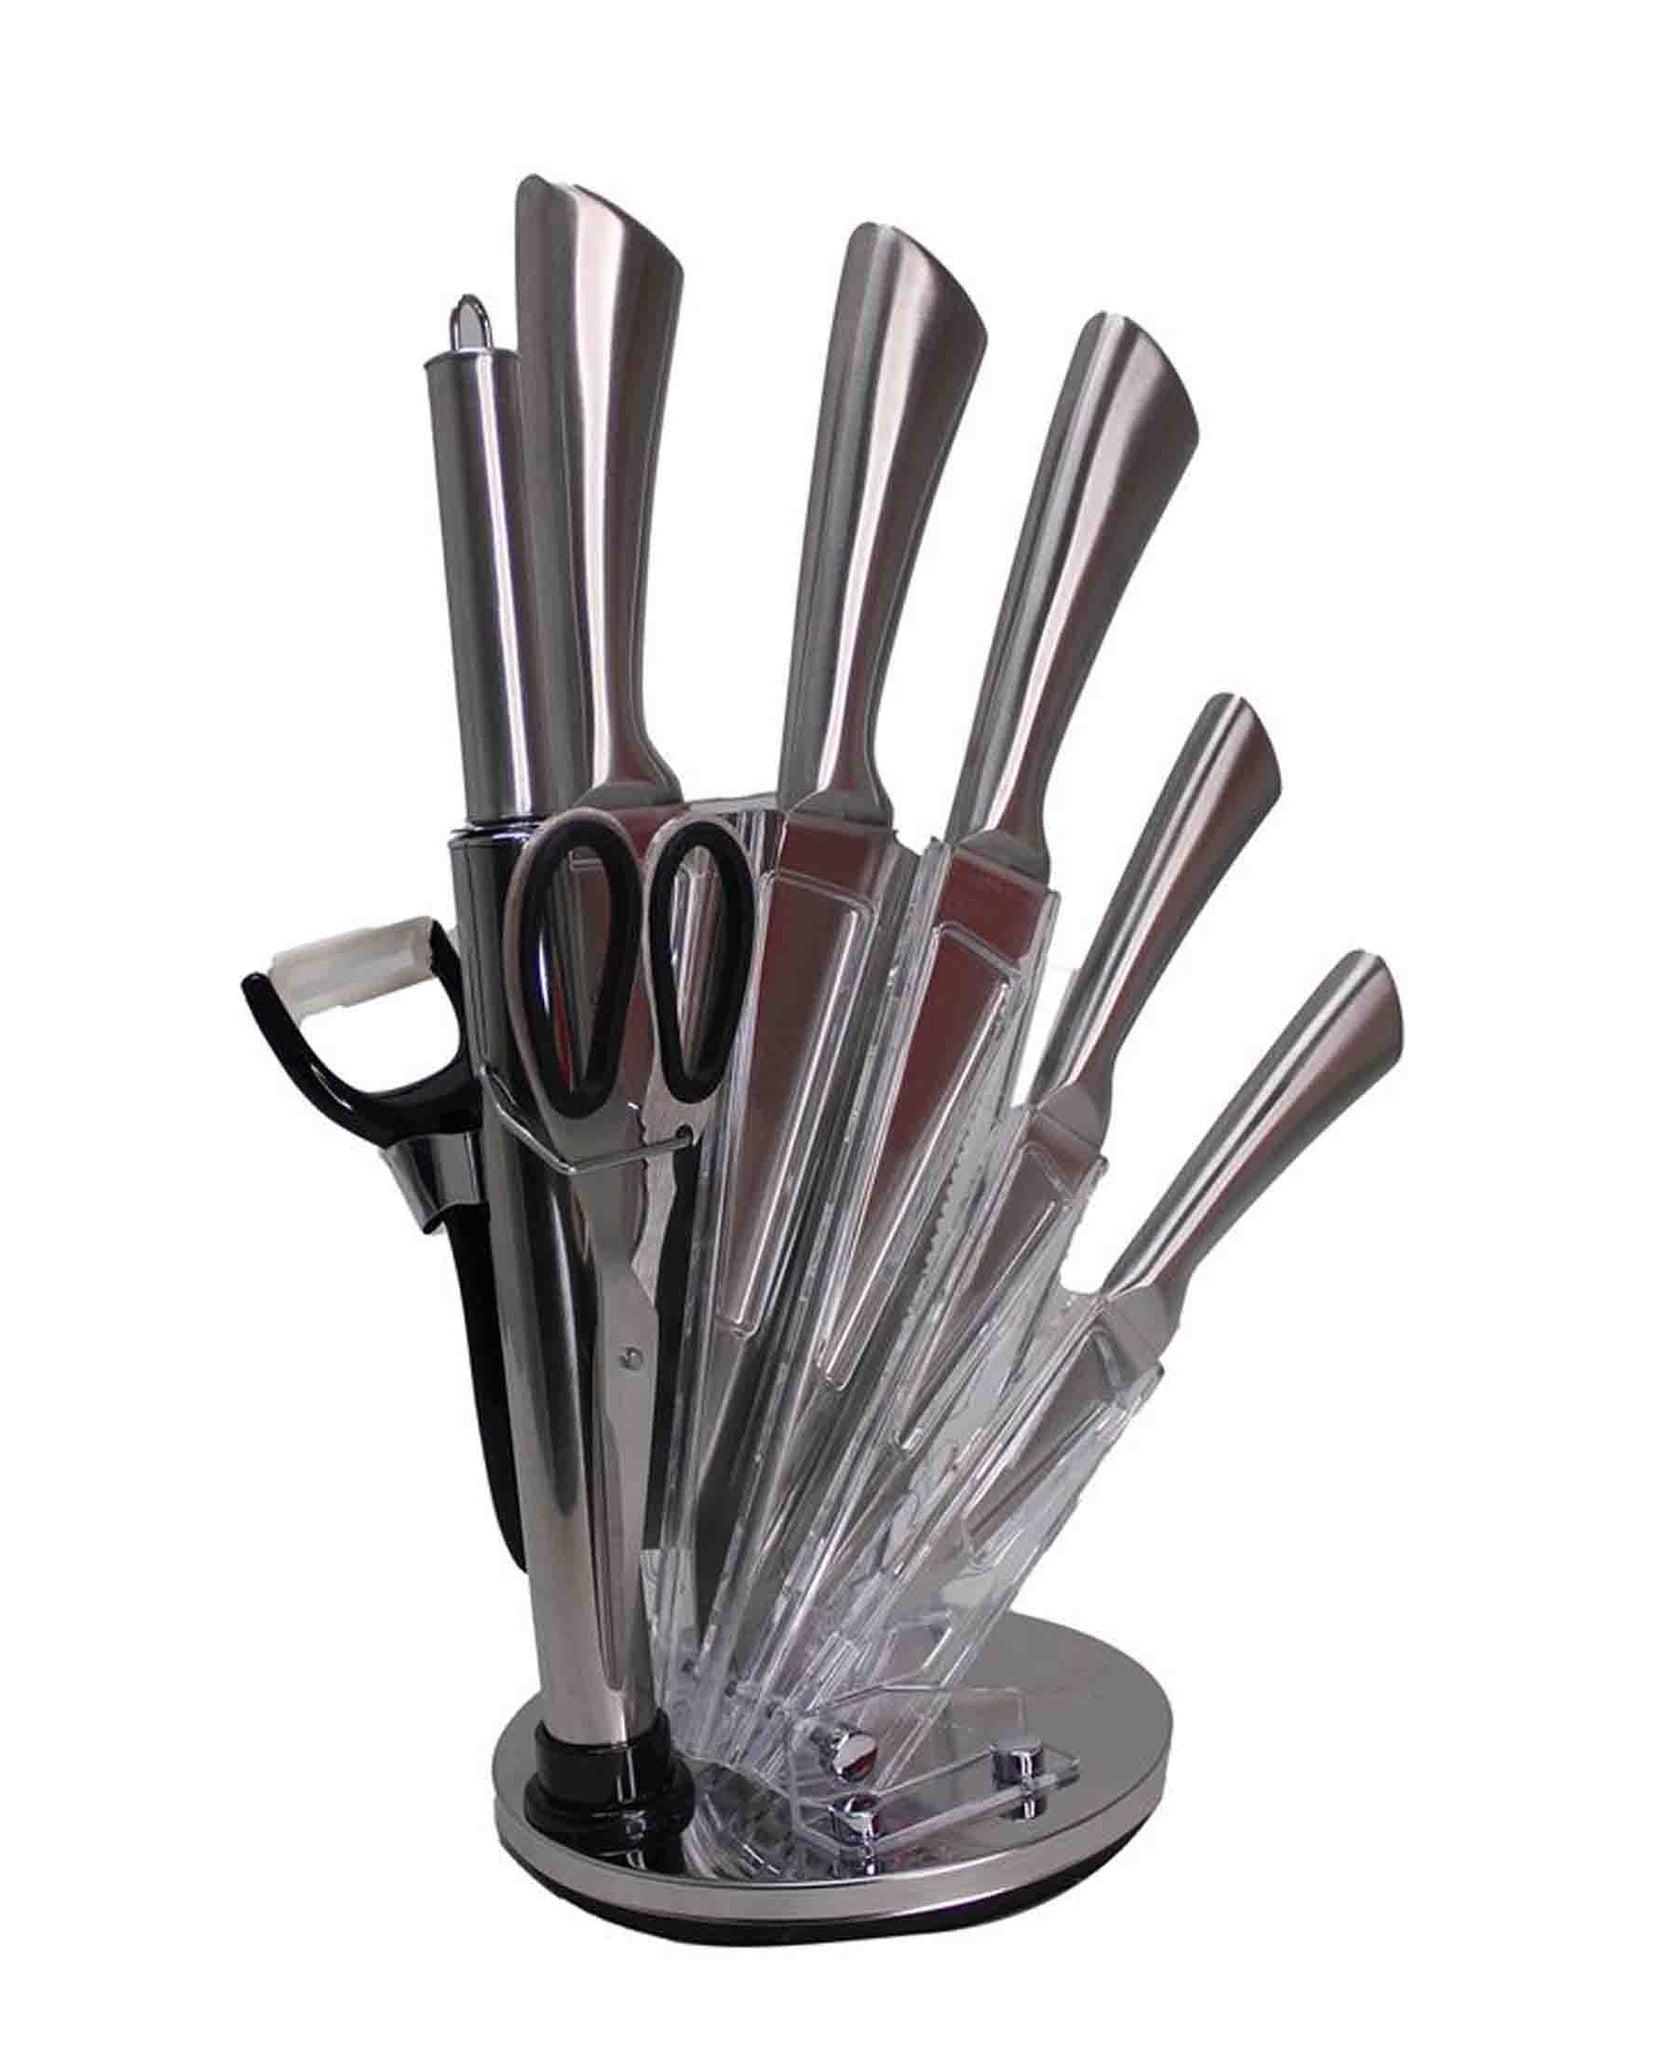 CH 9 Pcs Kitchen Knife Set - Silver Handles